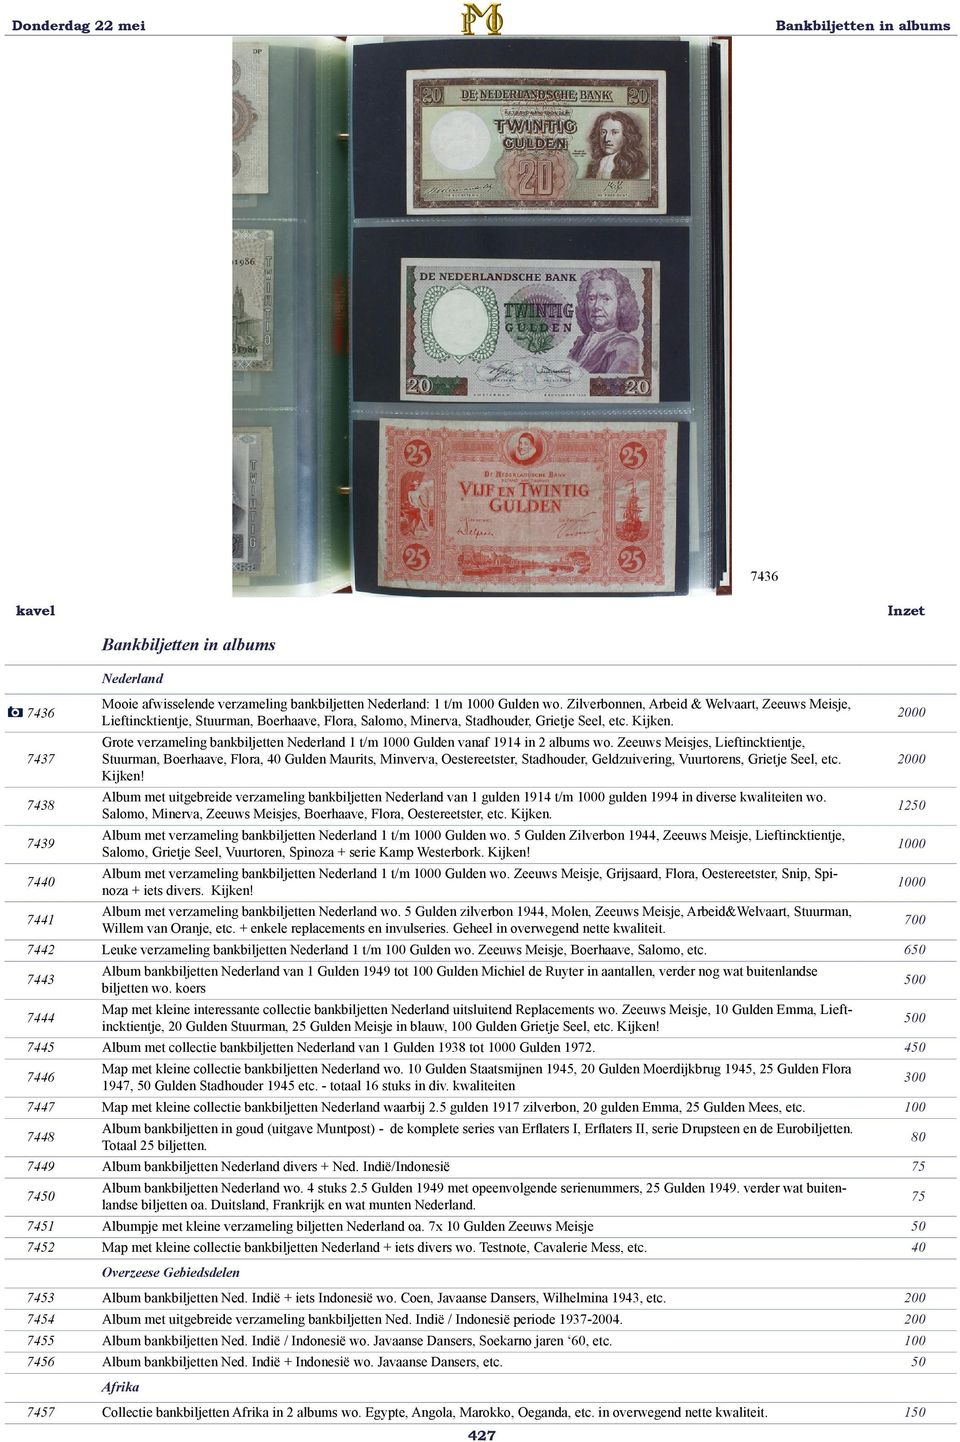 Grote verzameling bankbiljetten Nederland 1 t/m 1000 Gulden vanaf 1914 in 2 albums wo.